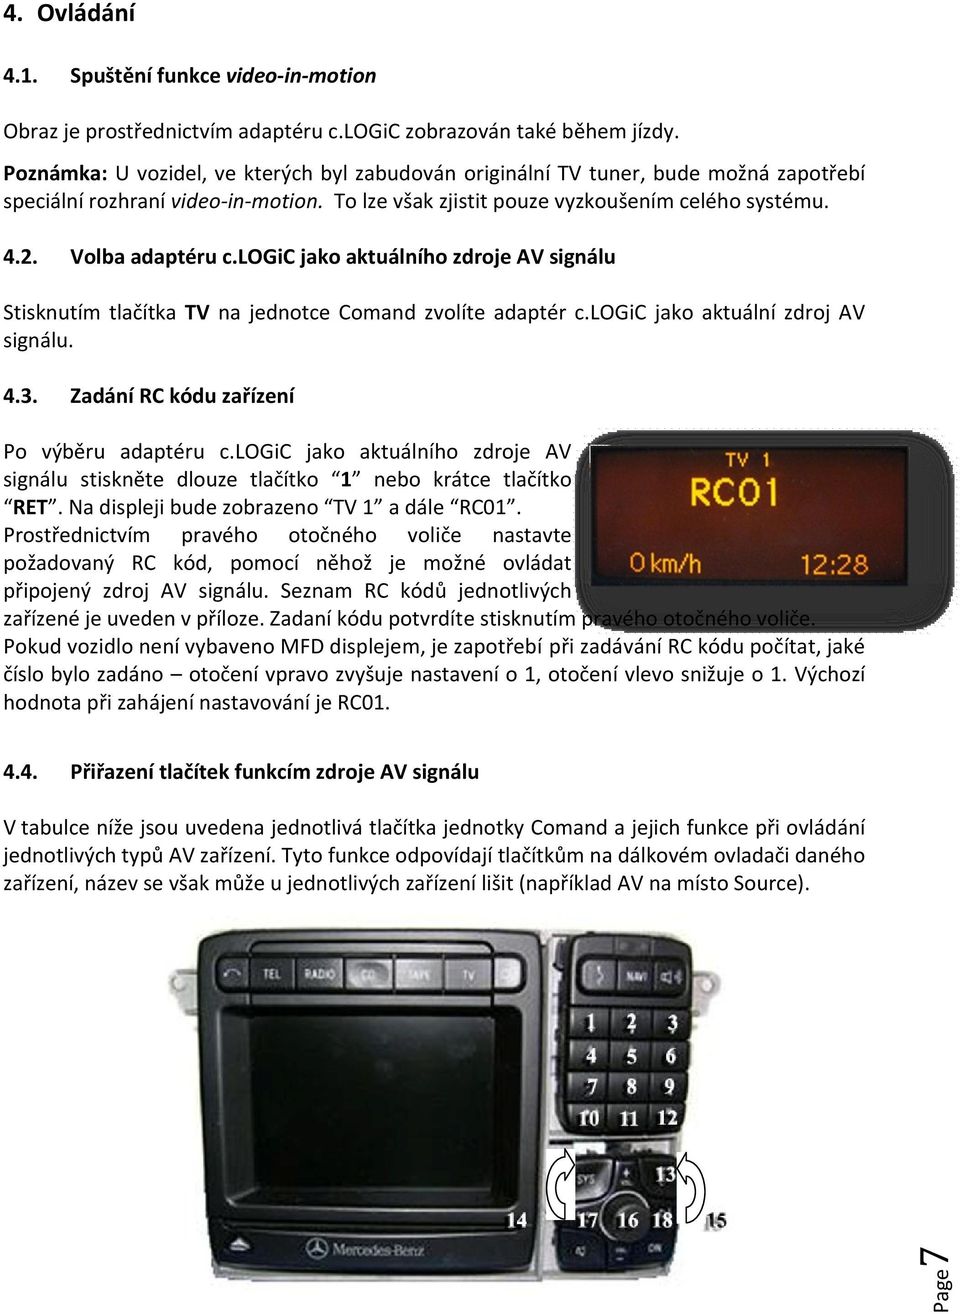 logic jako aktuálního zdroje AV signálu Stisknutím tlačítka TV na jednotce Comand zvolíte adaptér c.logic jako aktuální zdroj AV signálu. 4.3. Zadání RC kódu zařízení Po výběru adaptéru c.